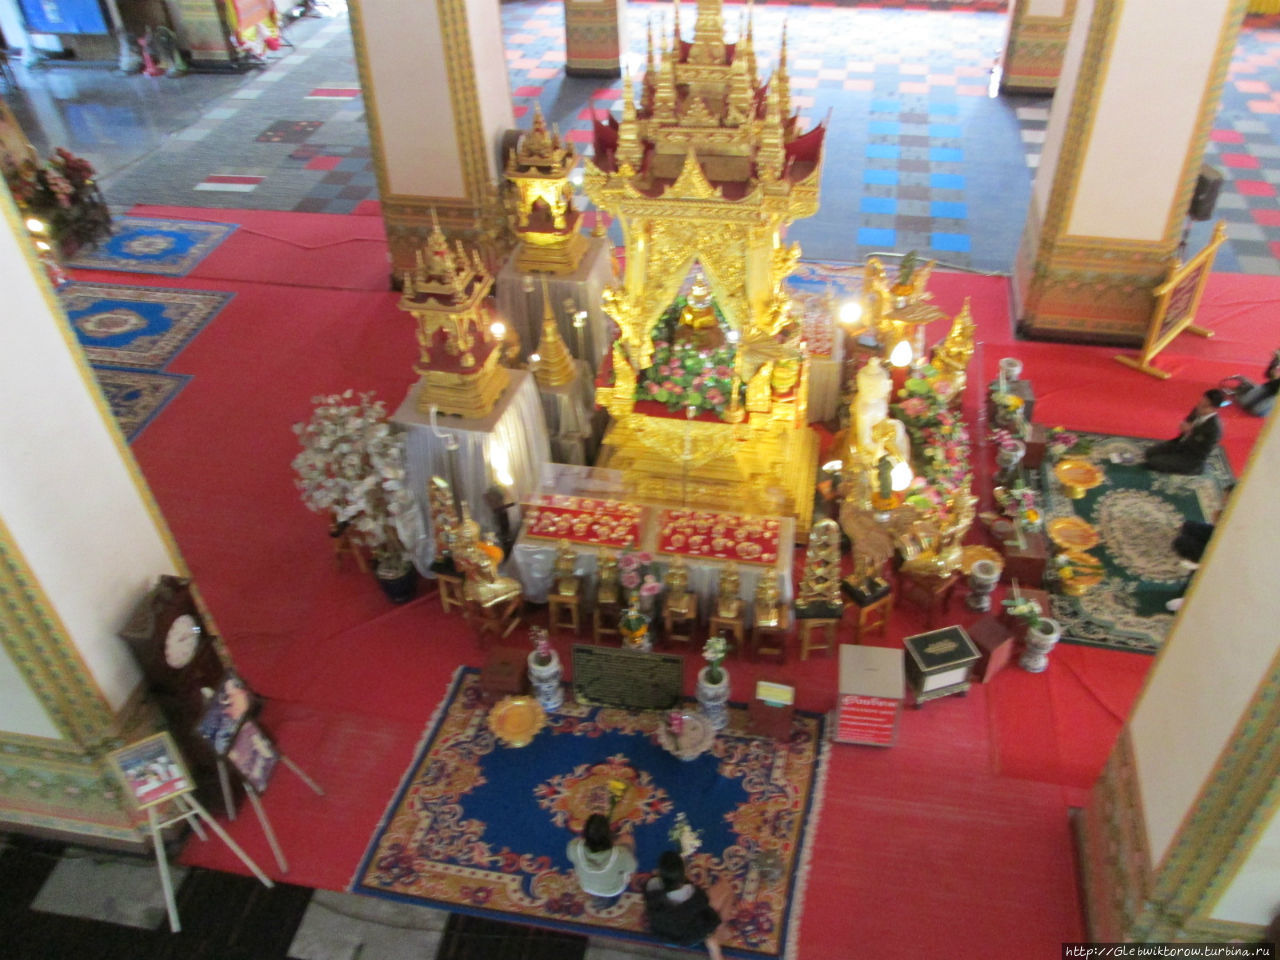 Осмотр королевской ступы Кхон-Каен, Таиланд